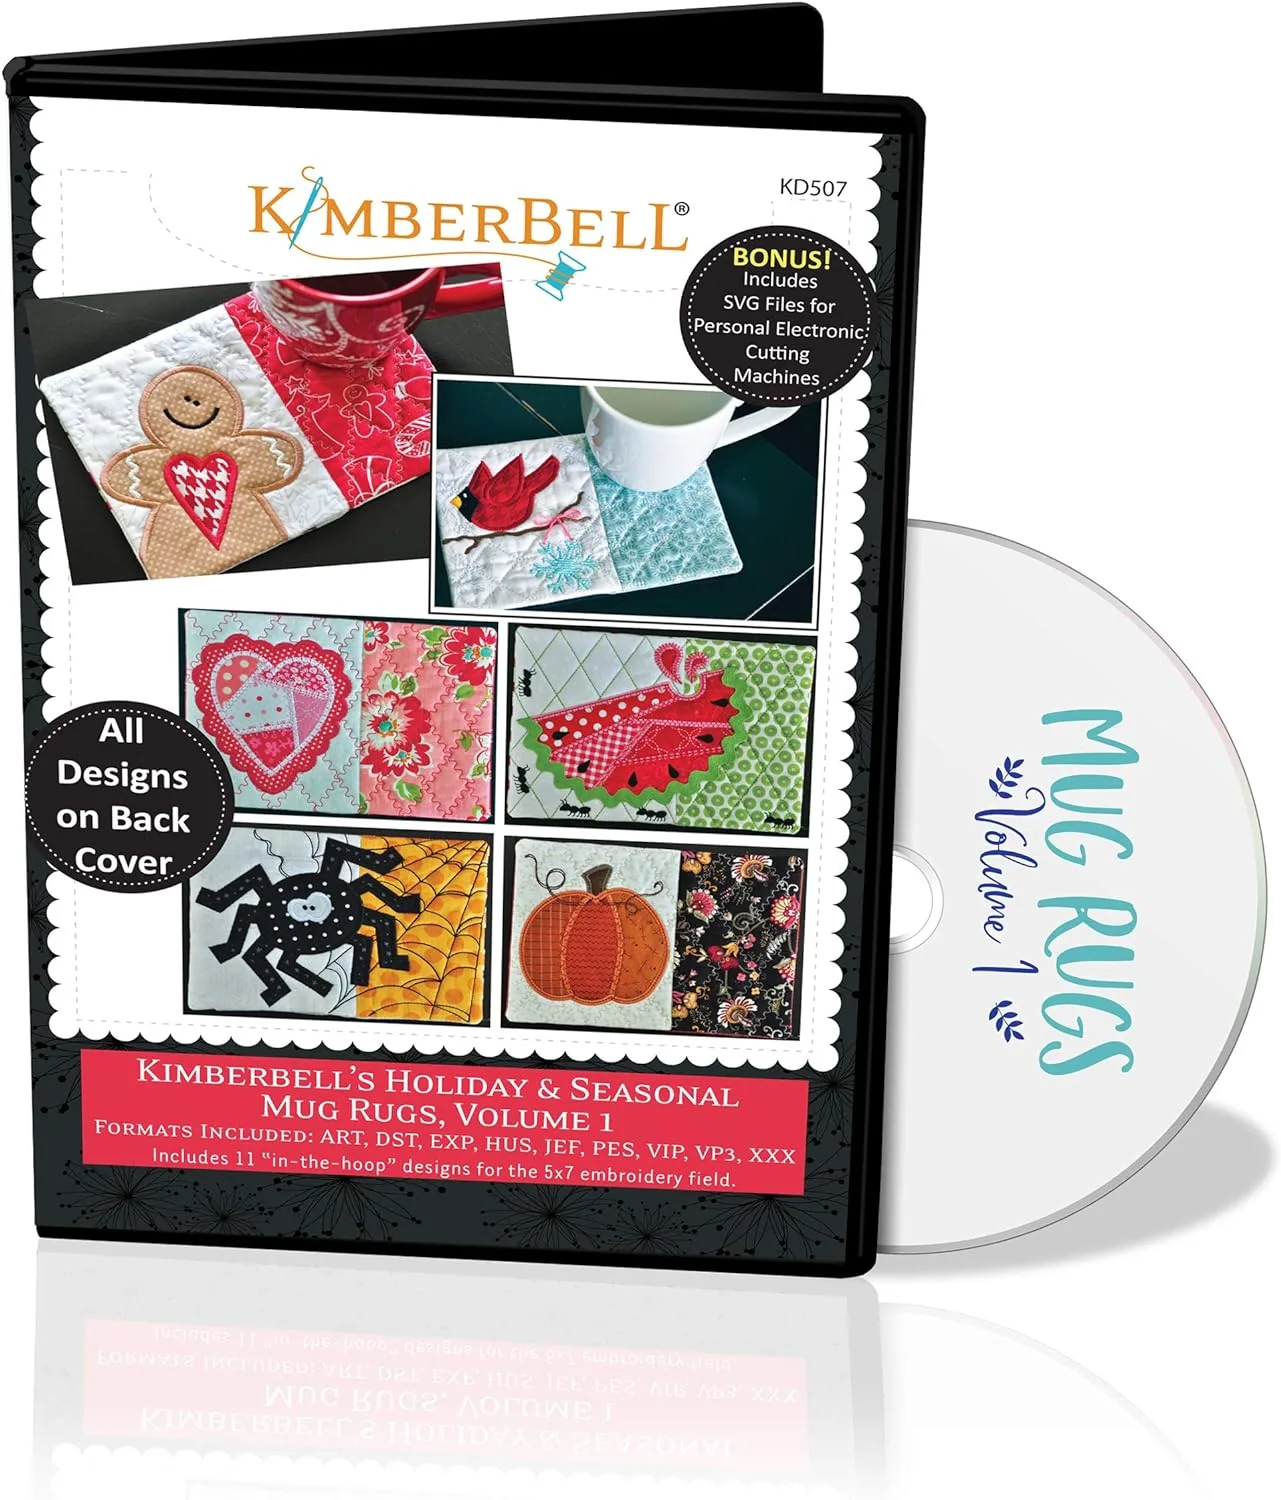 Kimberbell Holiday & Seasonal Mug Rugs Vol. 1